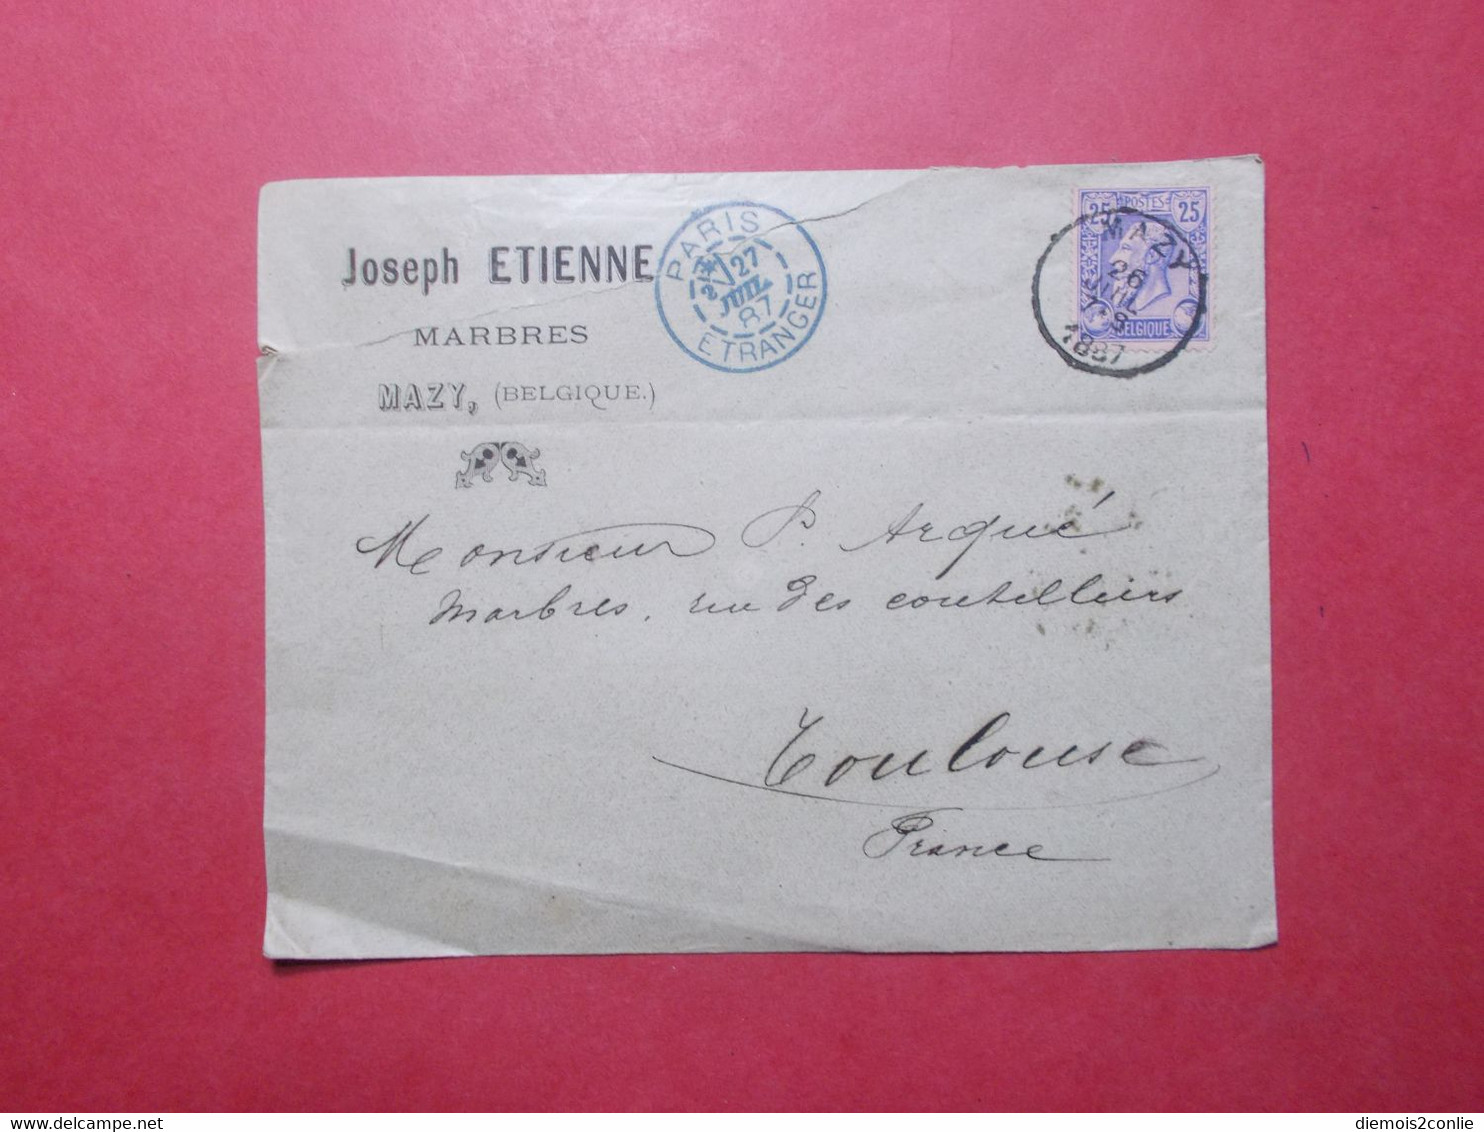 Marcophilie - BELGIQUE - Timbre Classique Sur Lettre Enveloppe + Paris Etranger 1887 (2740) - Transit Offices